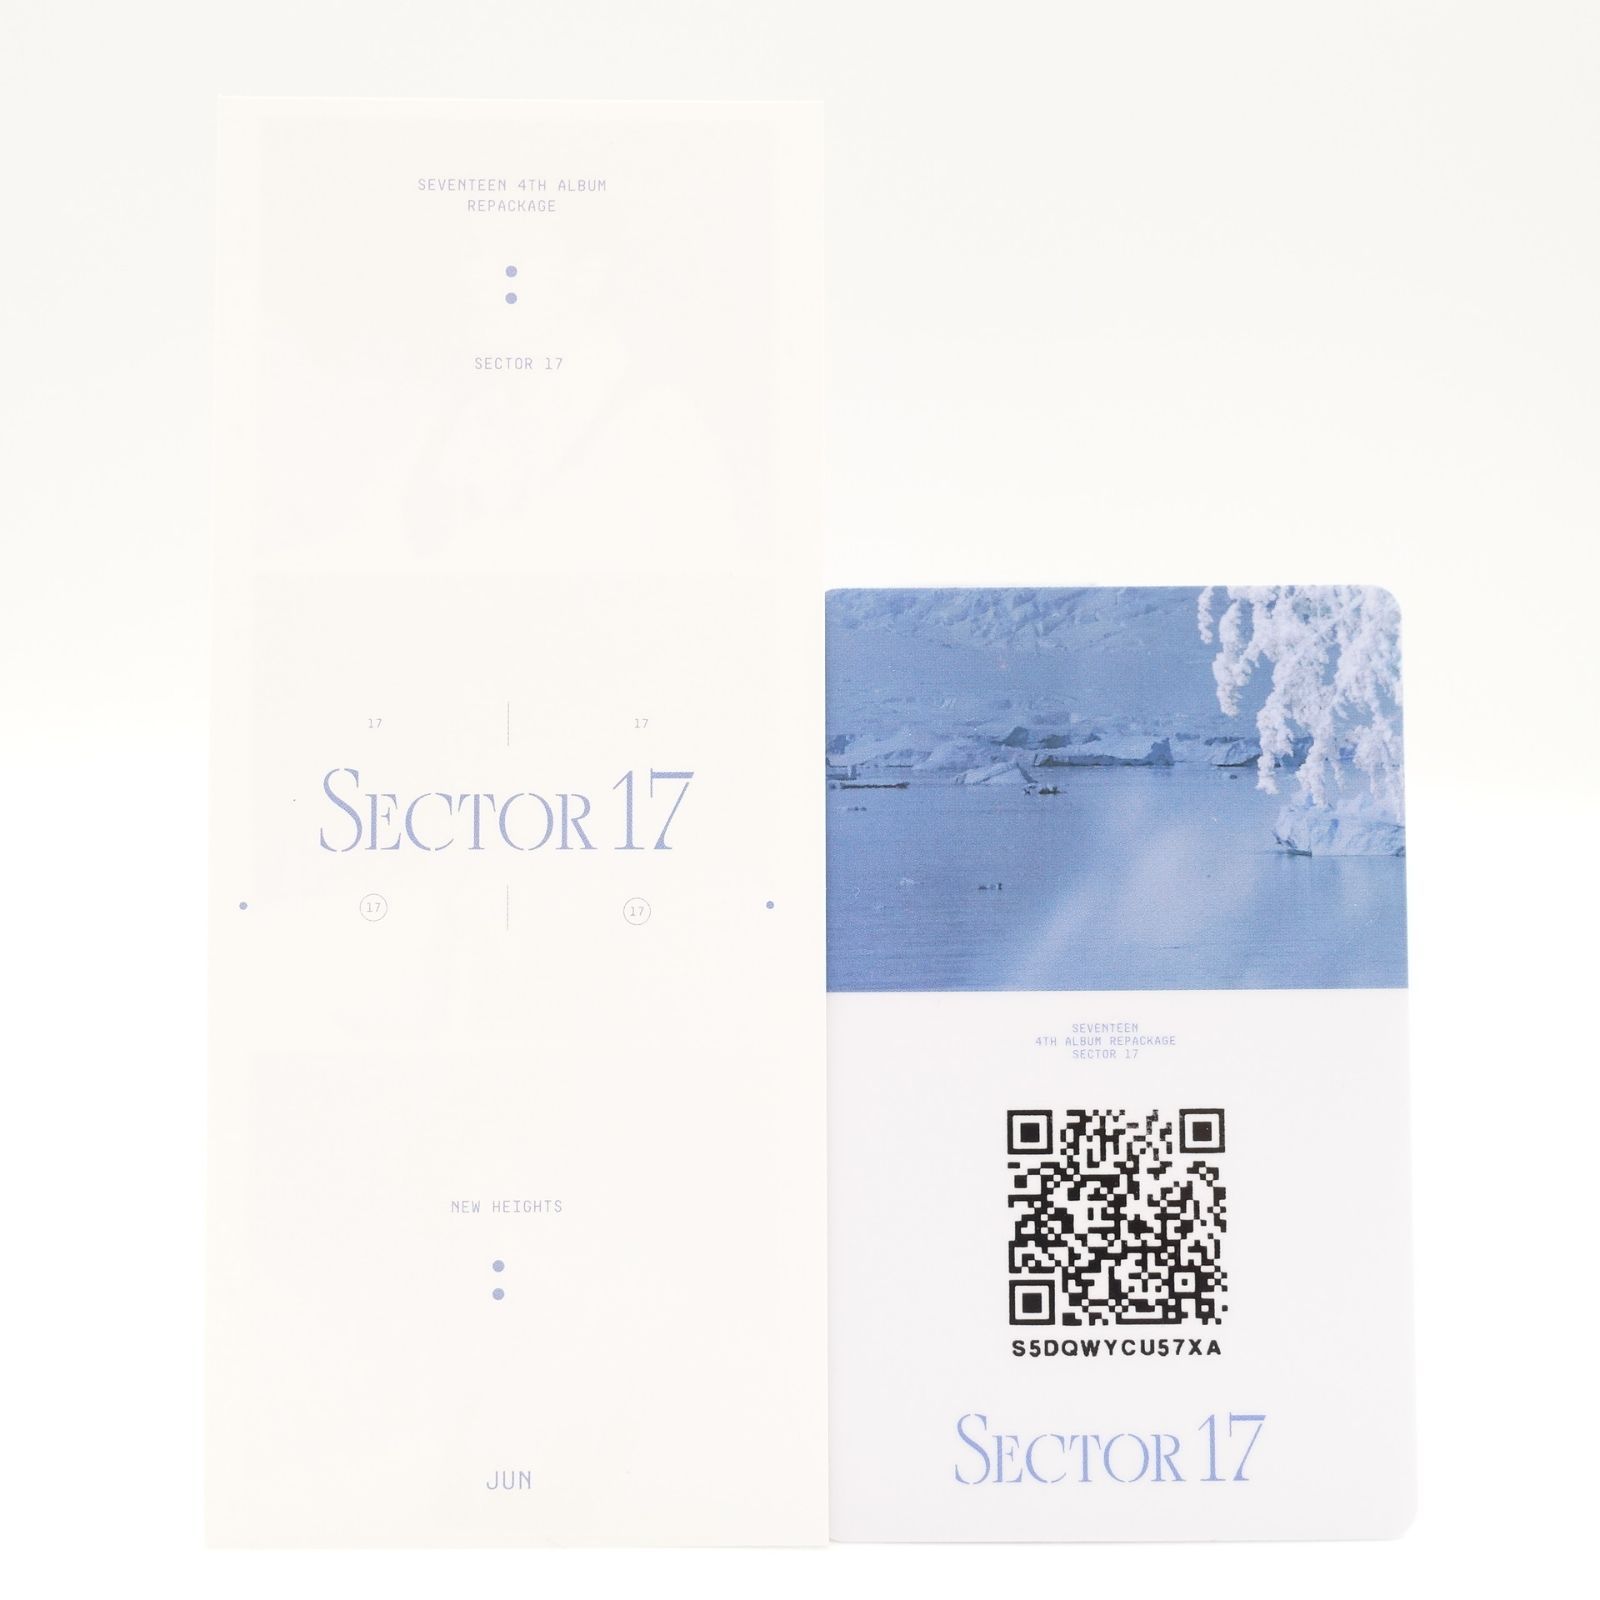 今すぐ購入安い SEVENTEEN 4thアルバム リパケ SECTOR17 ユニバ ジュン 